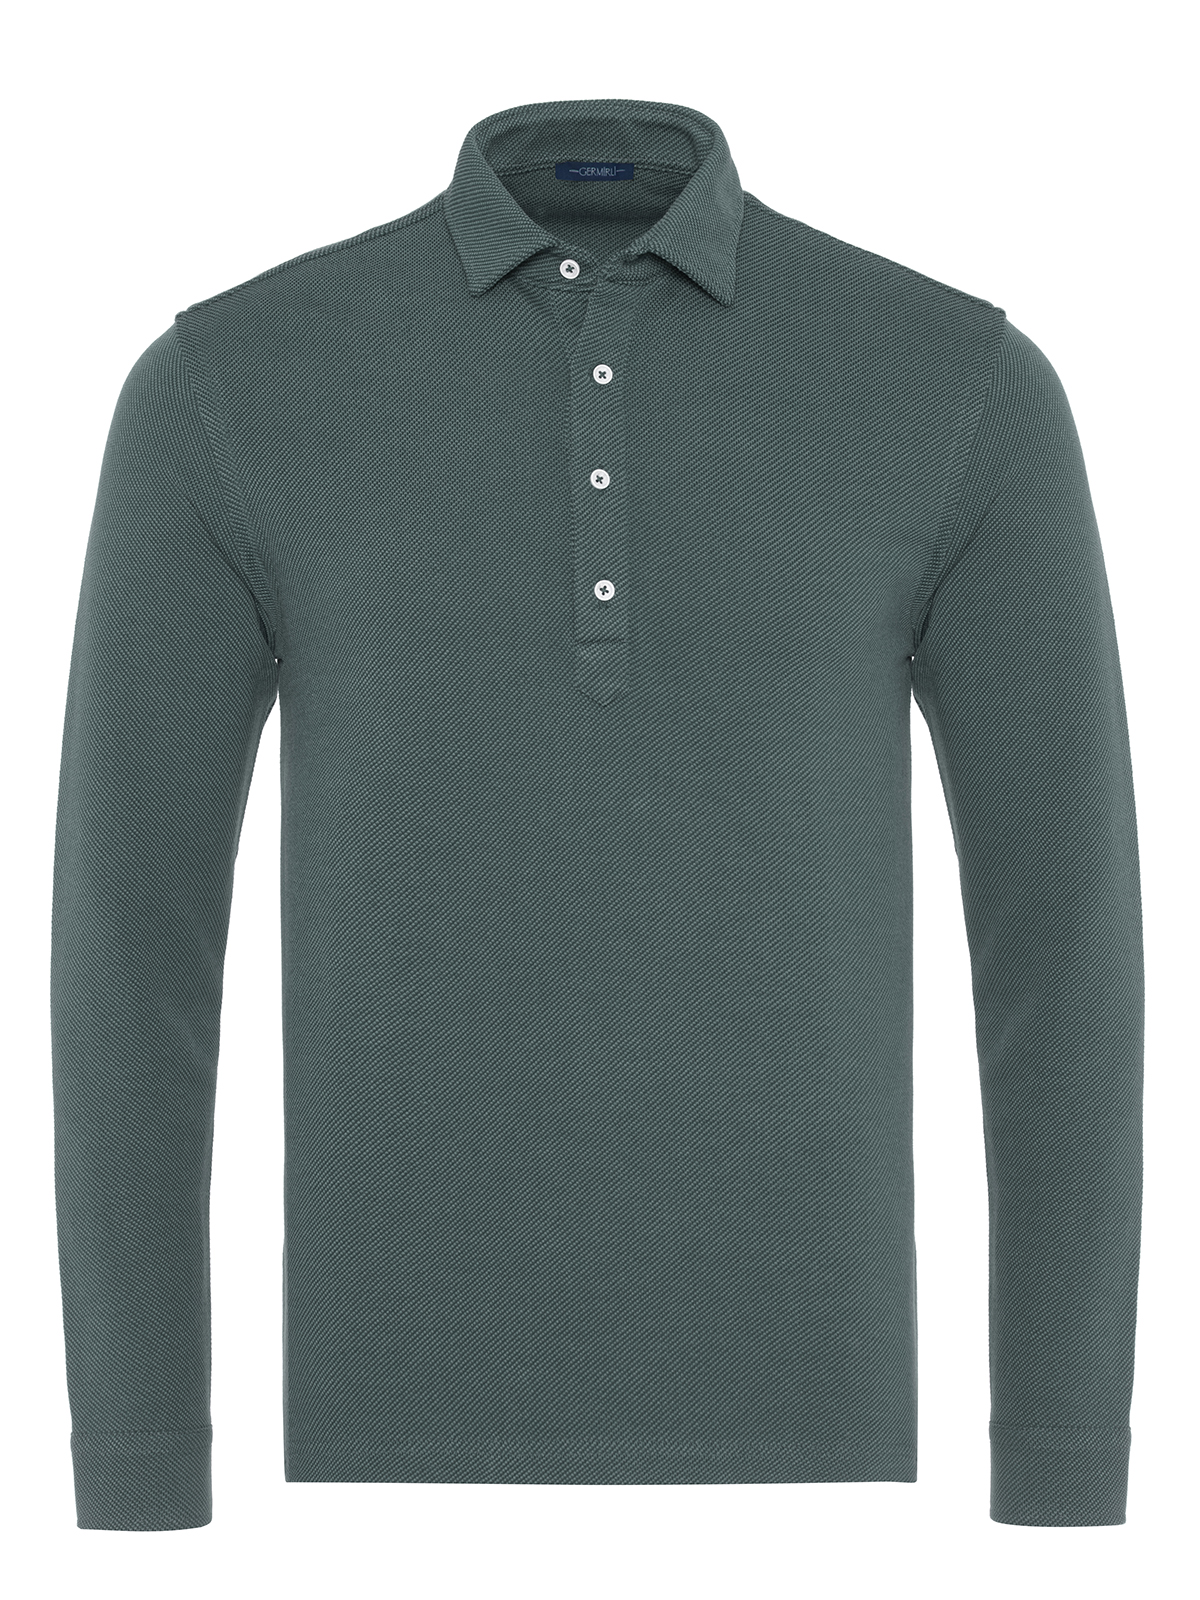 Germirli - Germirli Yeşil Dokulu Örme Gömlek Yaka Düğmeli Tailor Fit Uzun Kollu T-Shirt